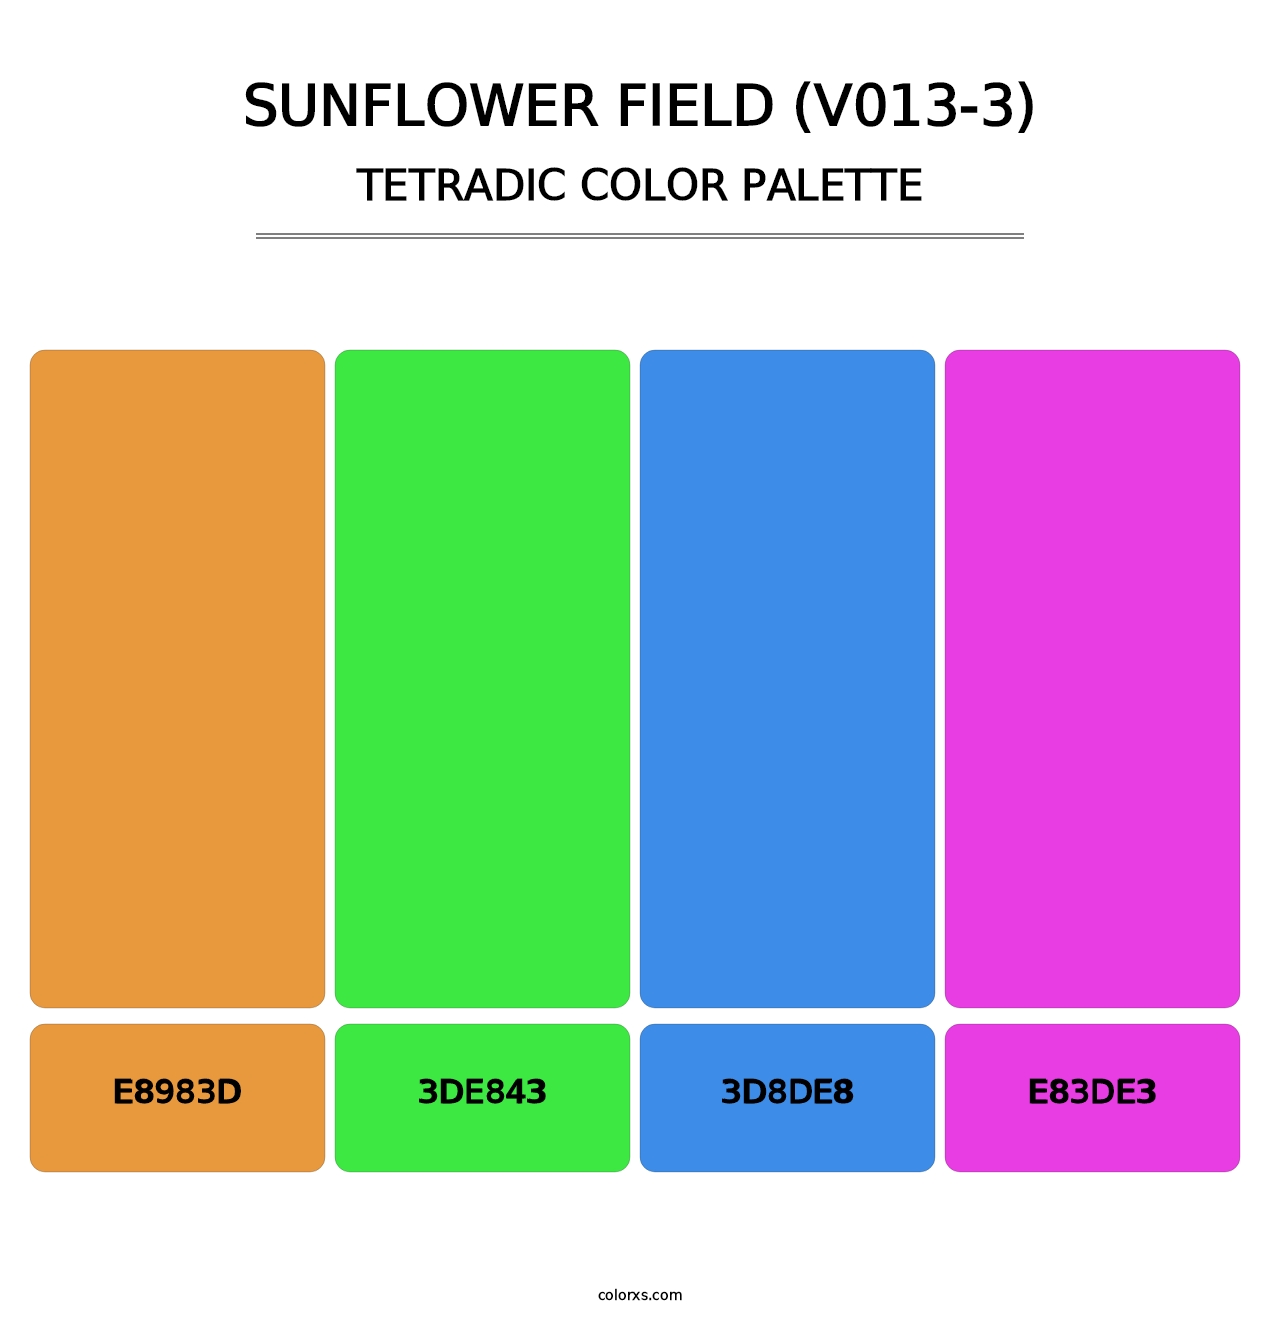 Sunflower Field (V013-3) - Tetradic Color Palette